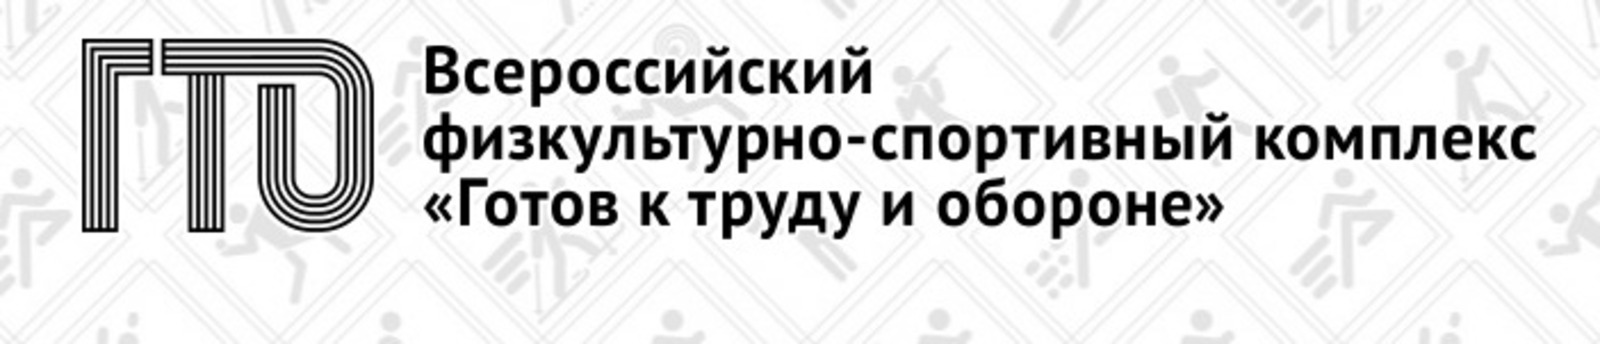 Gto ru для школьников user gto. ГТО логотип. Www.GTO.ru. ГТО логотип вектор.